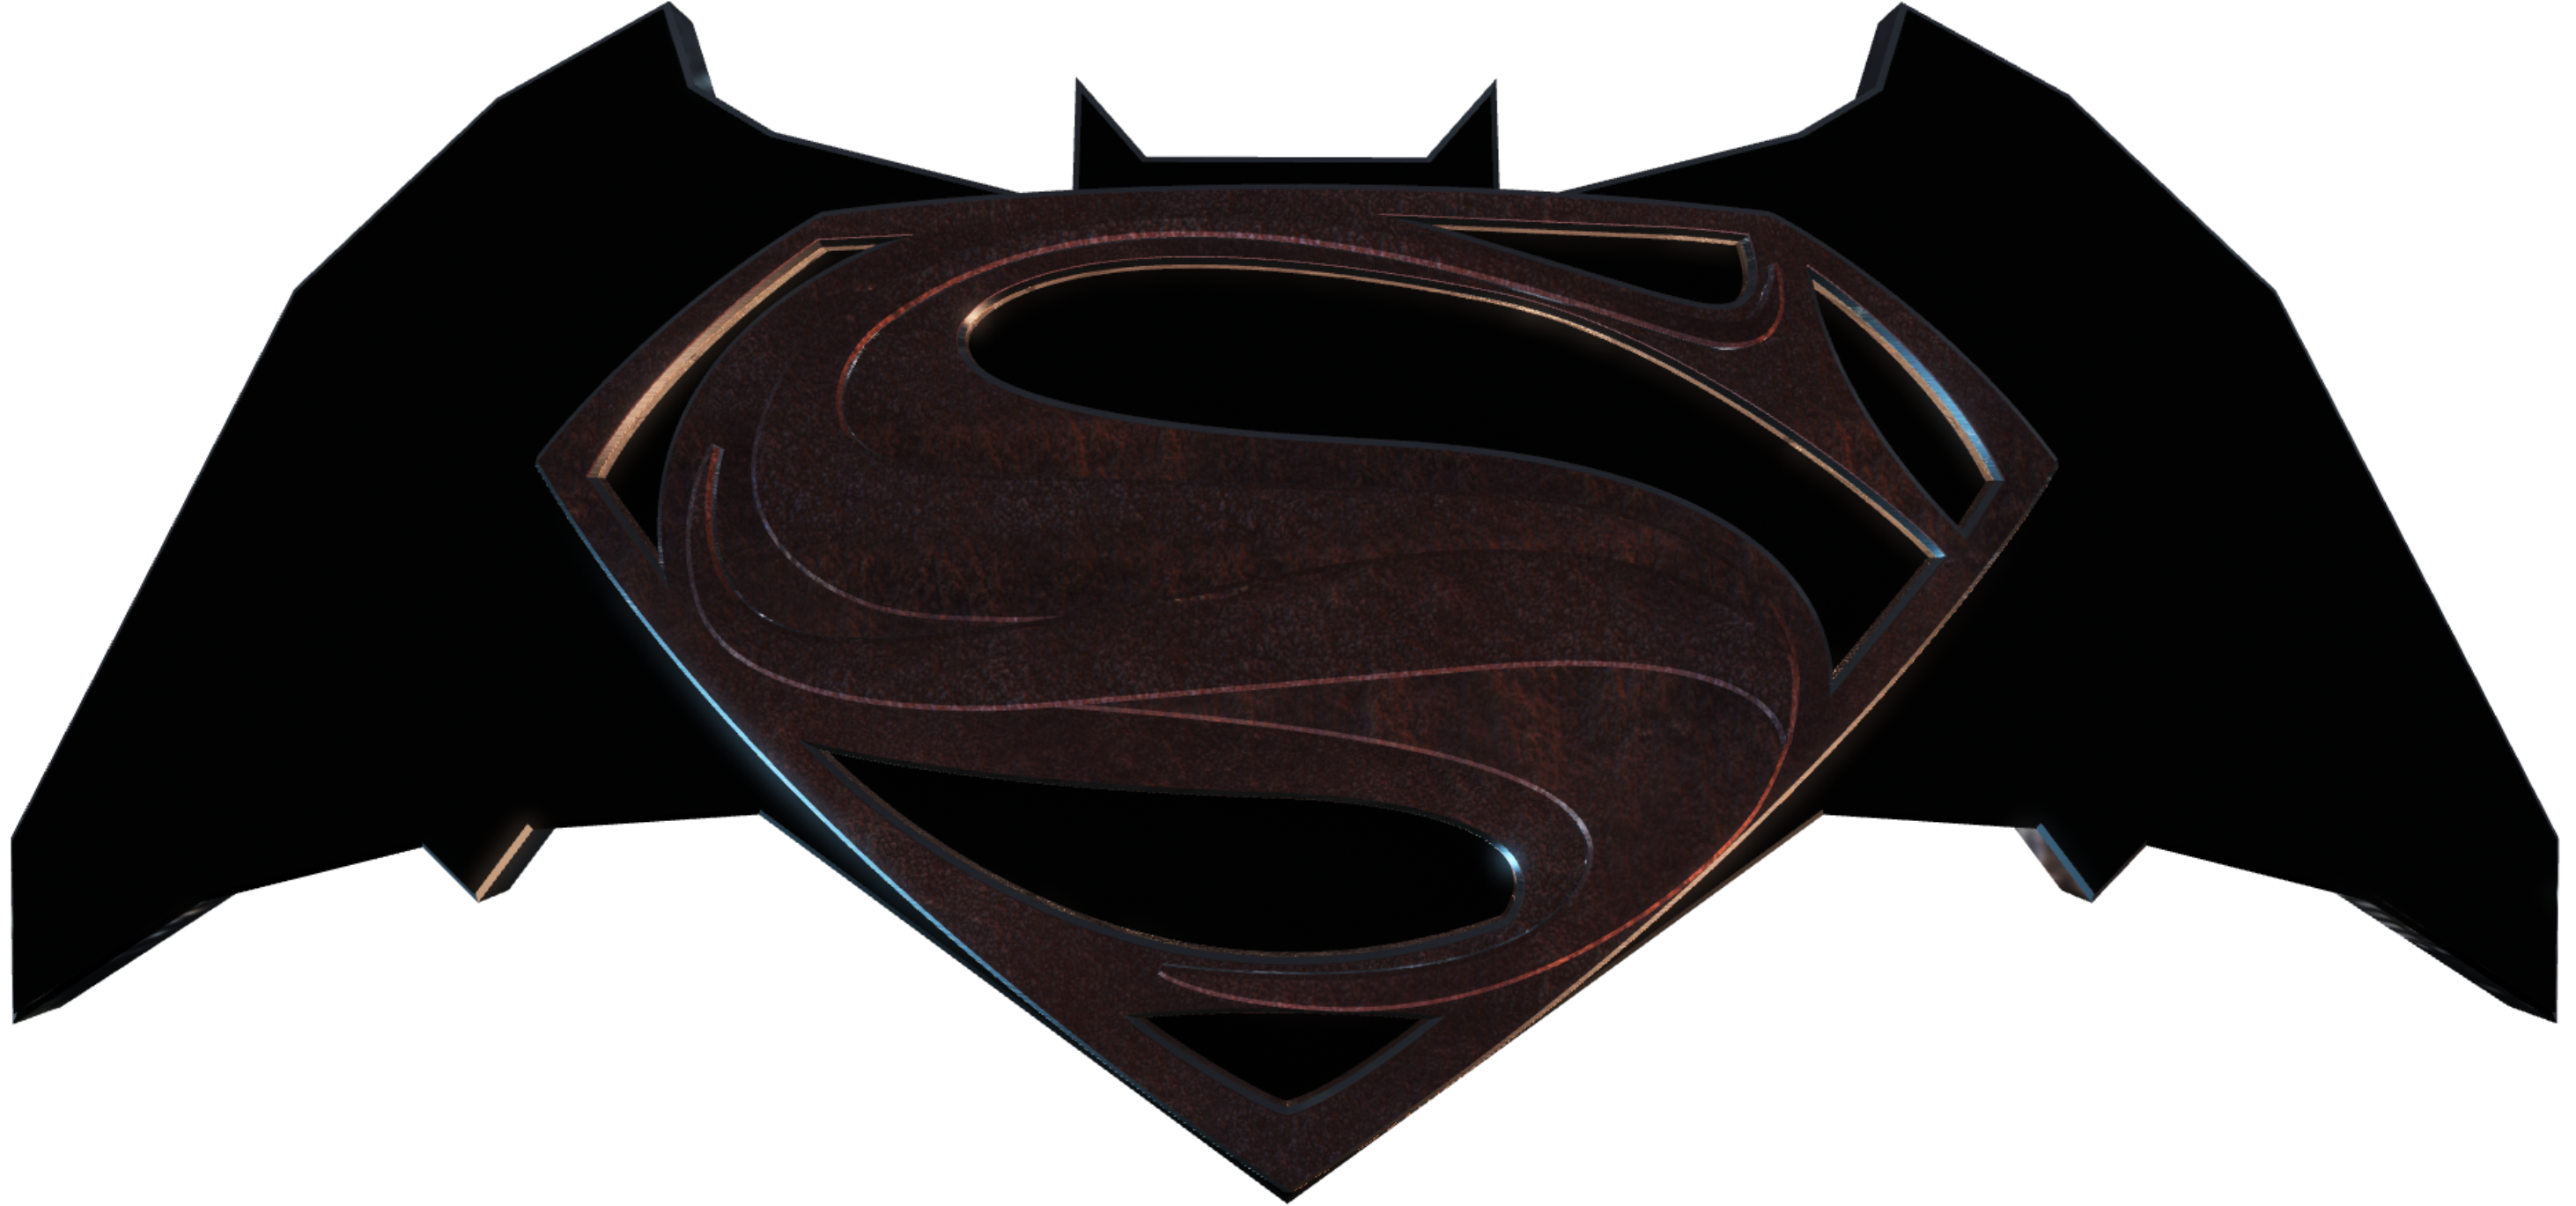 Batman Vs Superman Manips Art - Black And White Batman V Superman Logo (3000x1688)